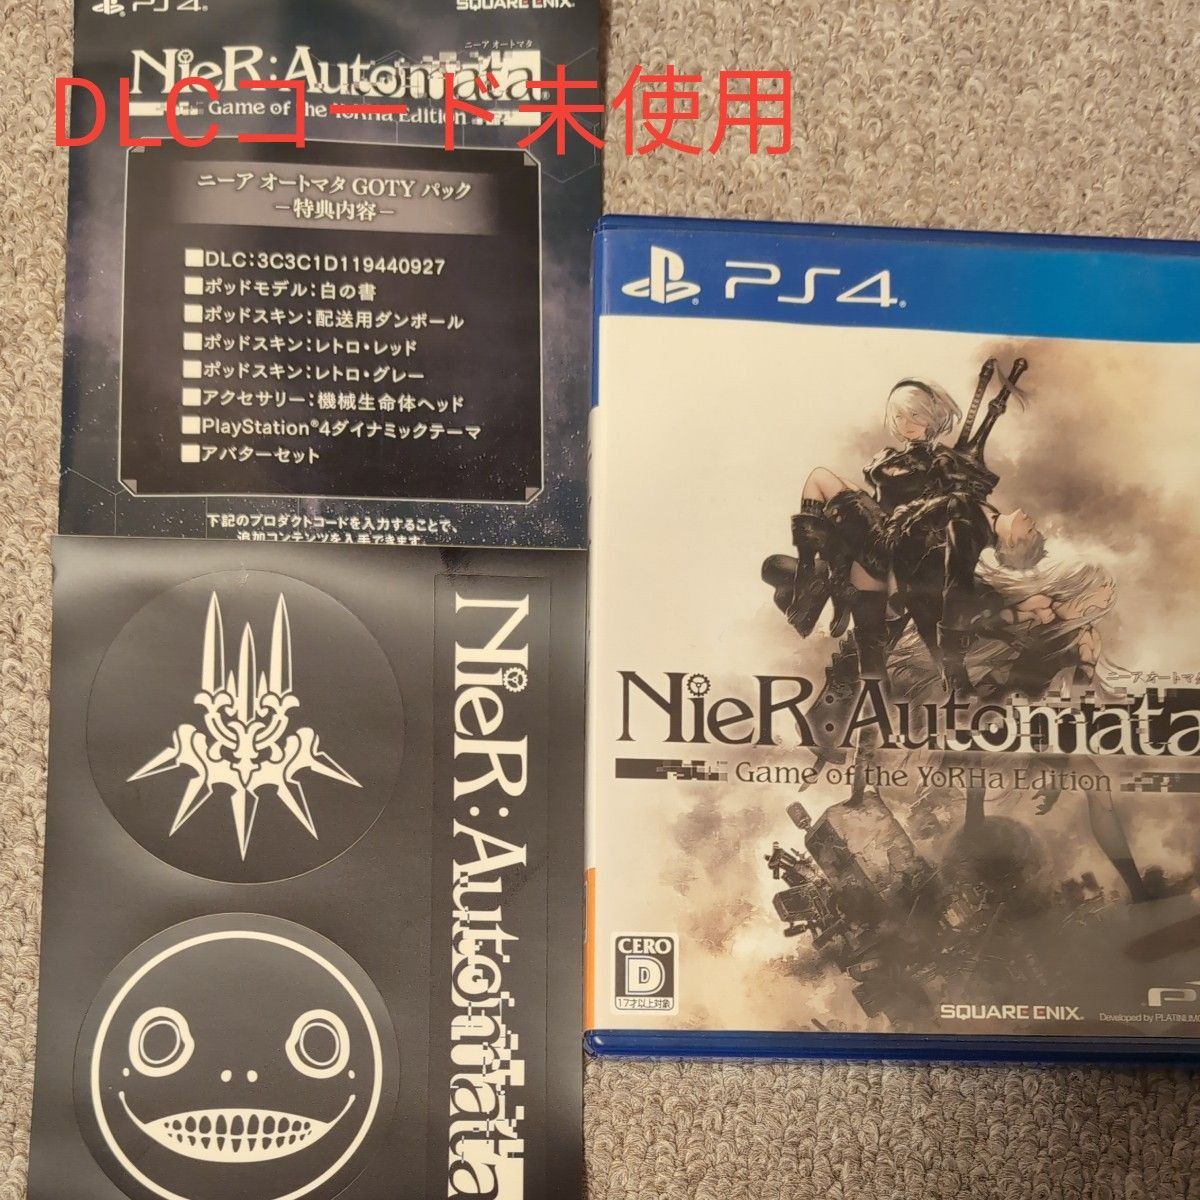 【PS4】 NieR:Automata [ゲーム オブ ザ ヨルハ エディション]DLCコード未使用